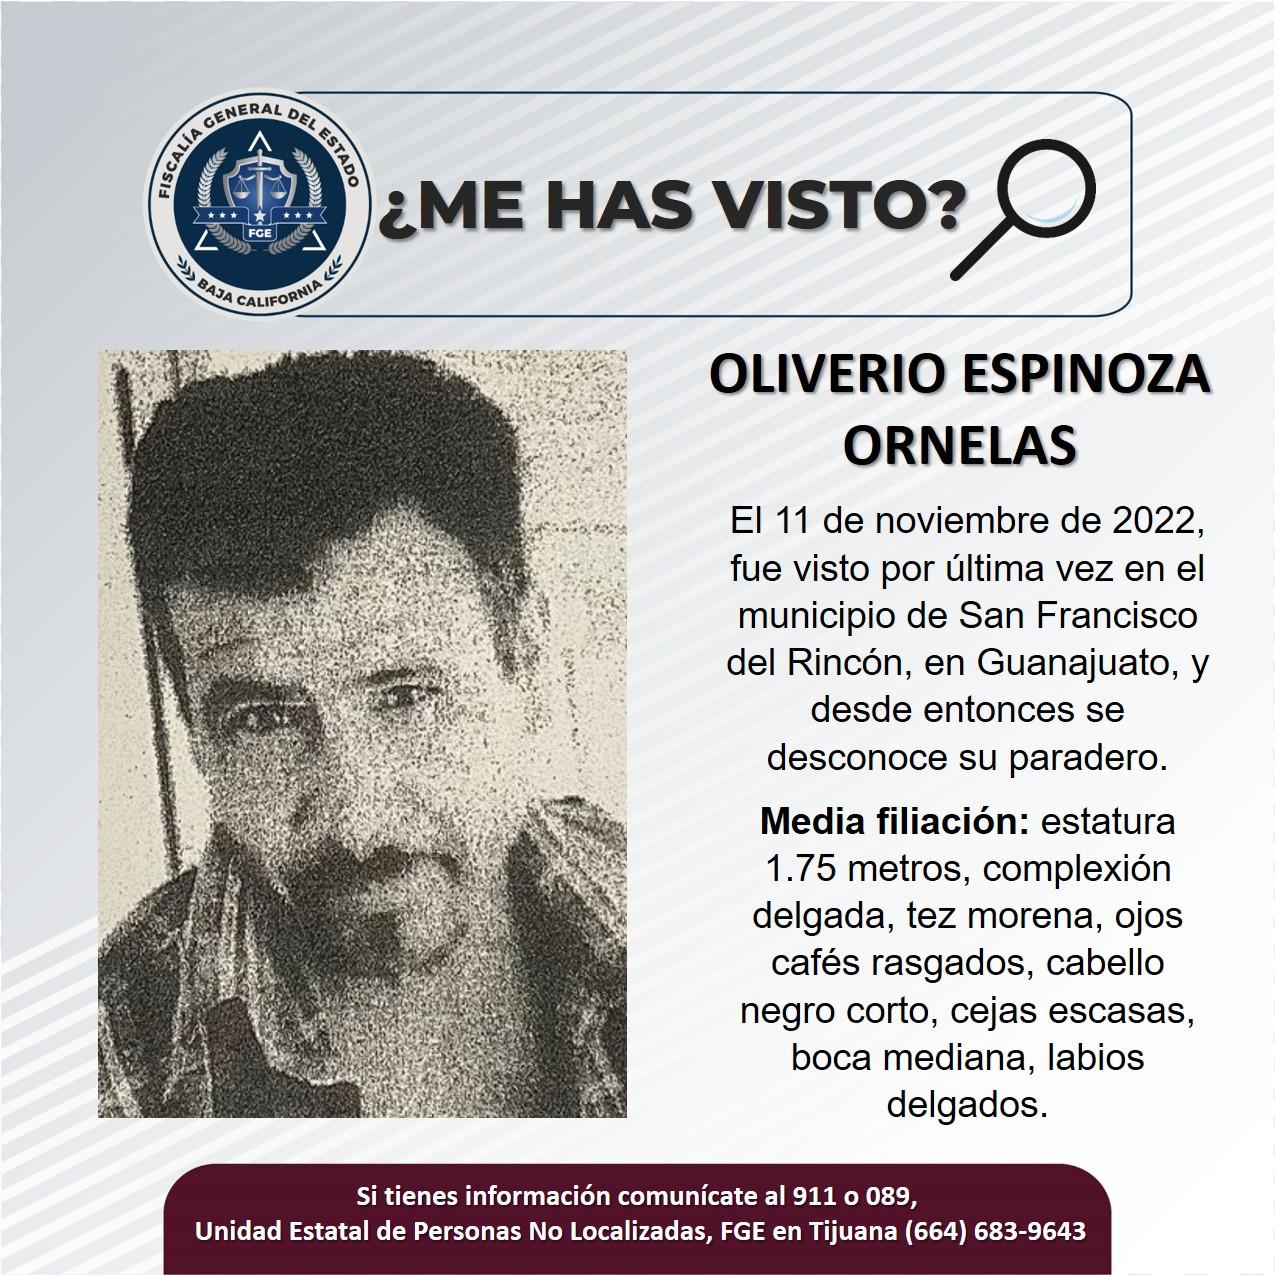 Servicio social: Se busca a Oliverio Espinoza Ornelas